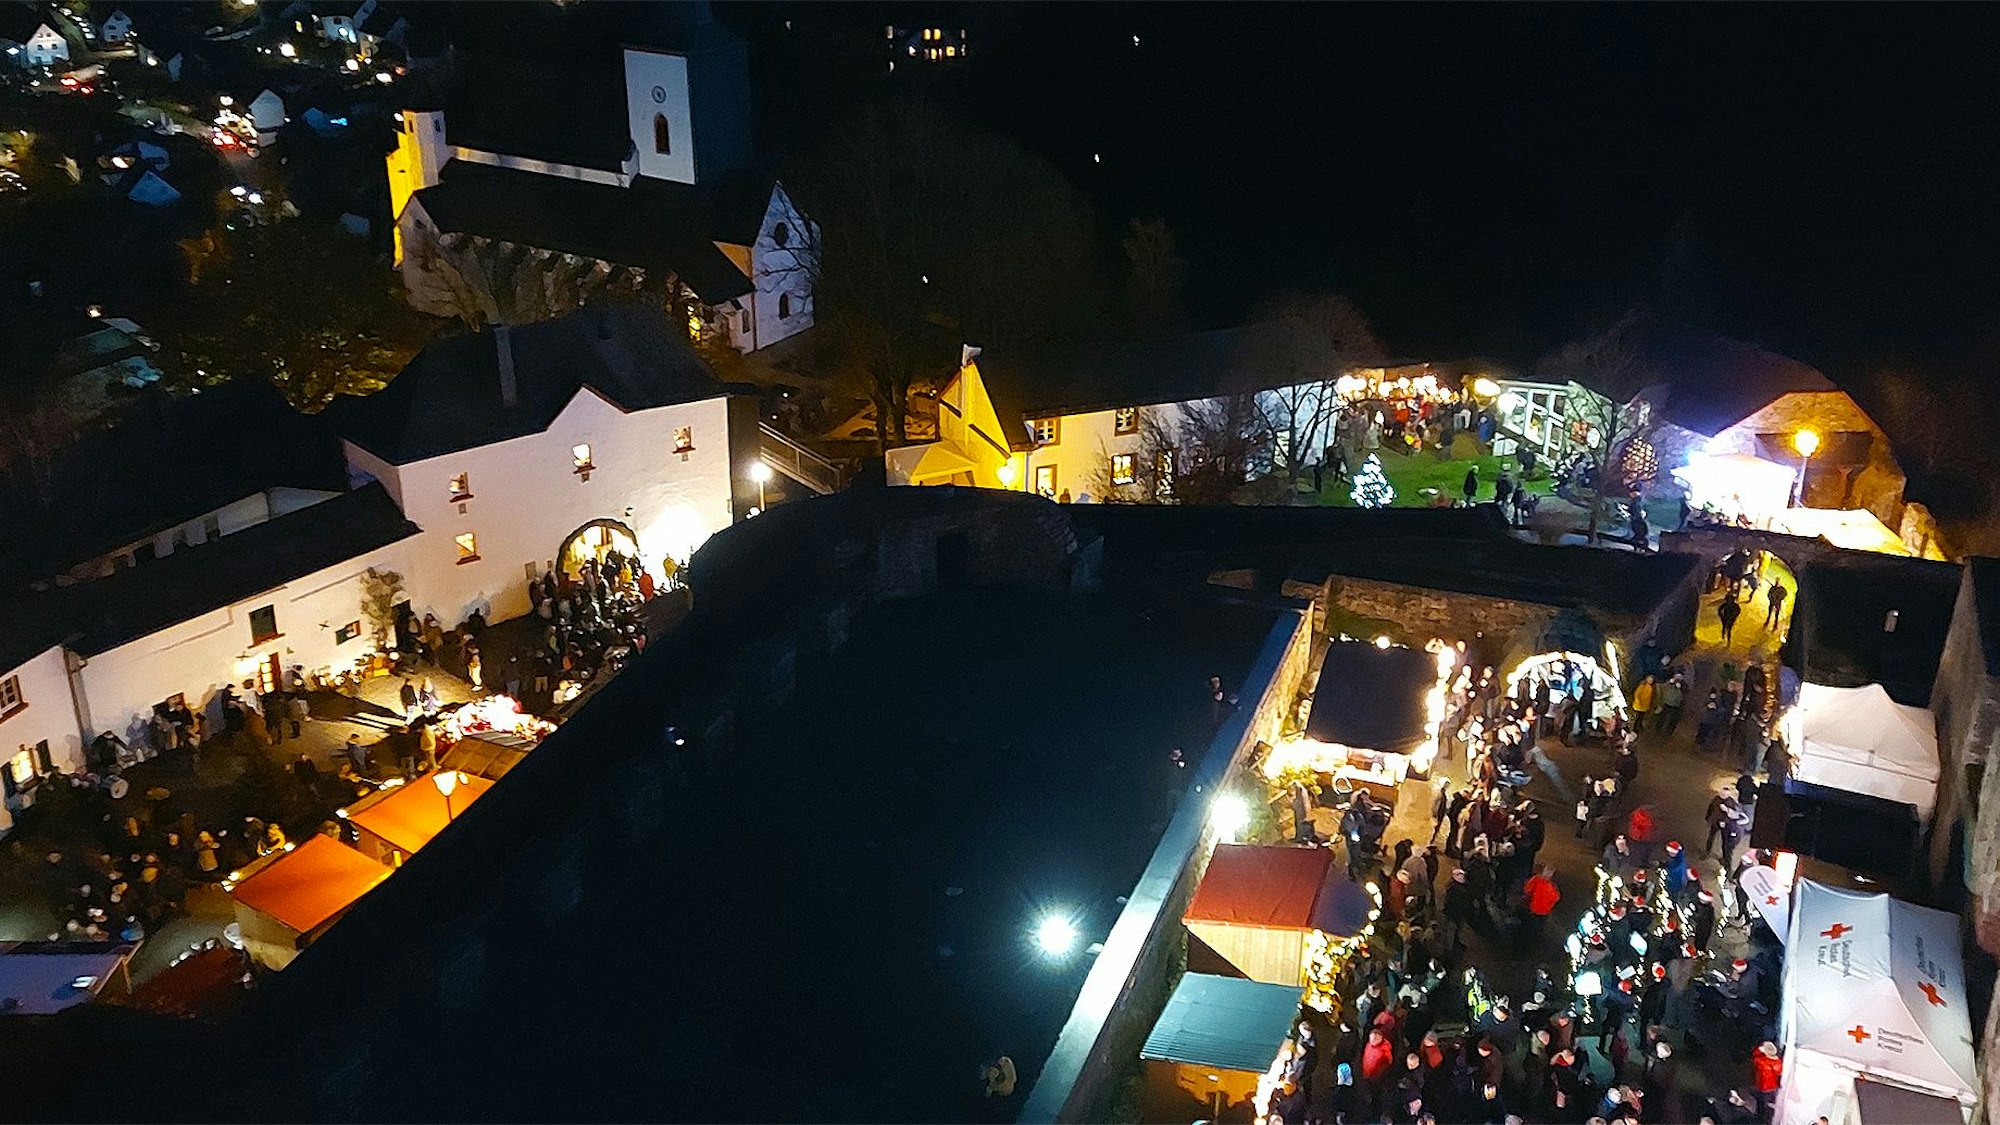 Vom Burgturm geht der Blick hinunter auf den Weihnachtsmarkt im mittelalterlichen Burgbering von Reifferscheid. In den illuminierten Gassen tummeln sich die Besucher zwischen den Ständen, im Hintergrund sieht man die Pfarrkirche und im Tal die Häuser von Reifferscheid.